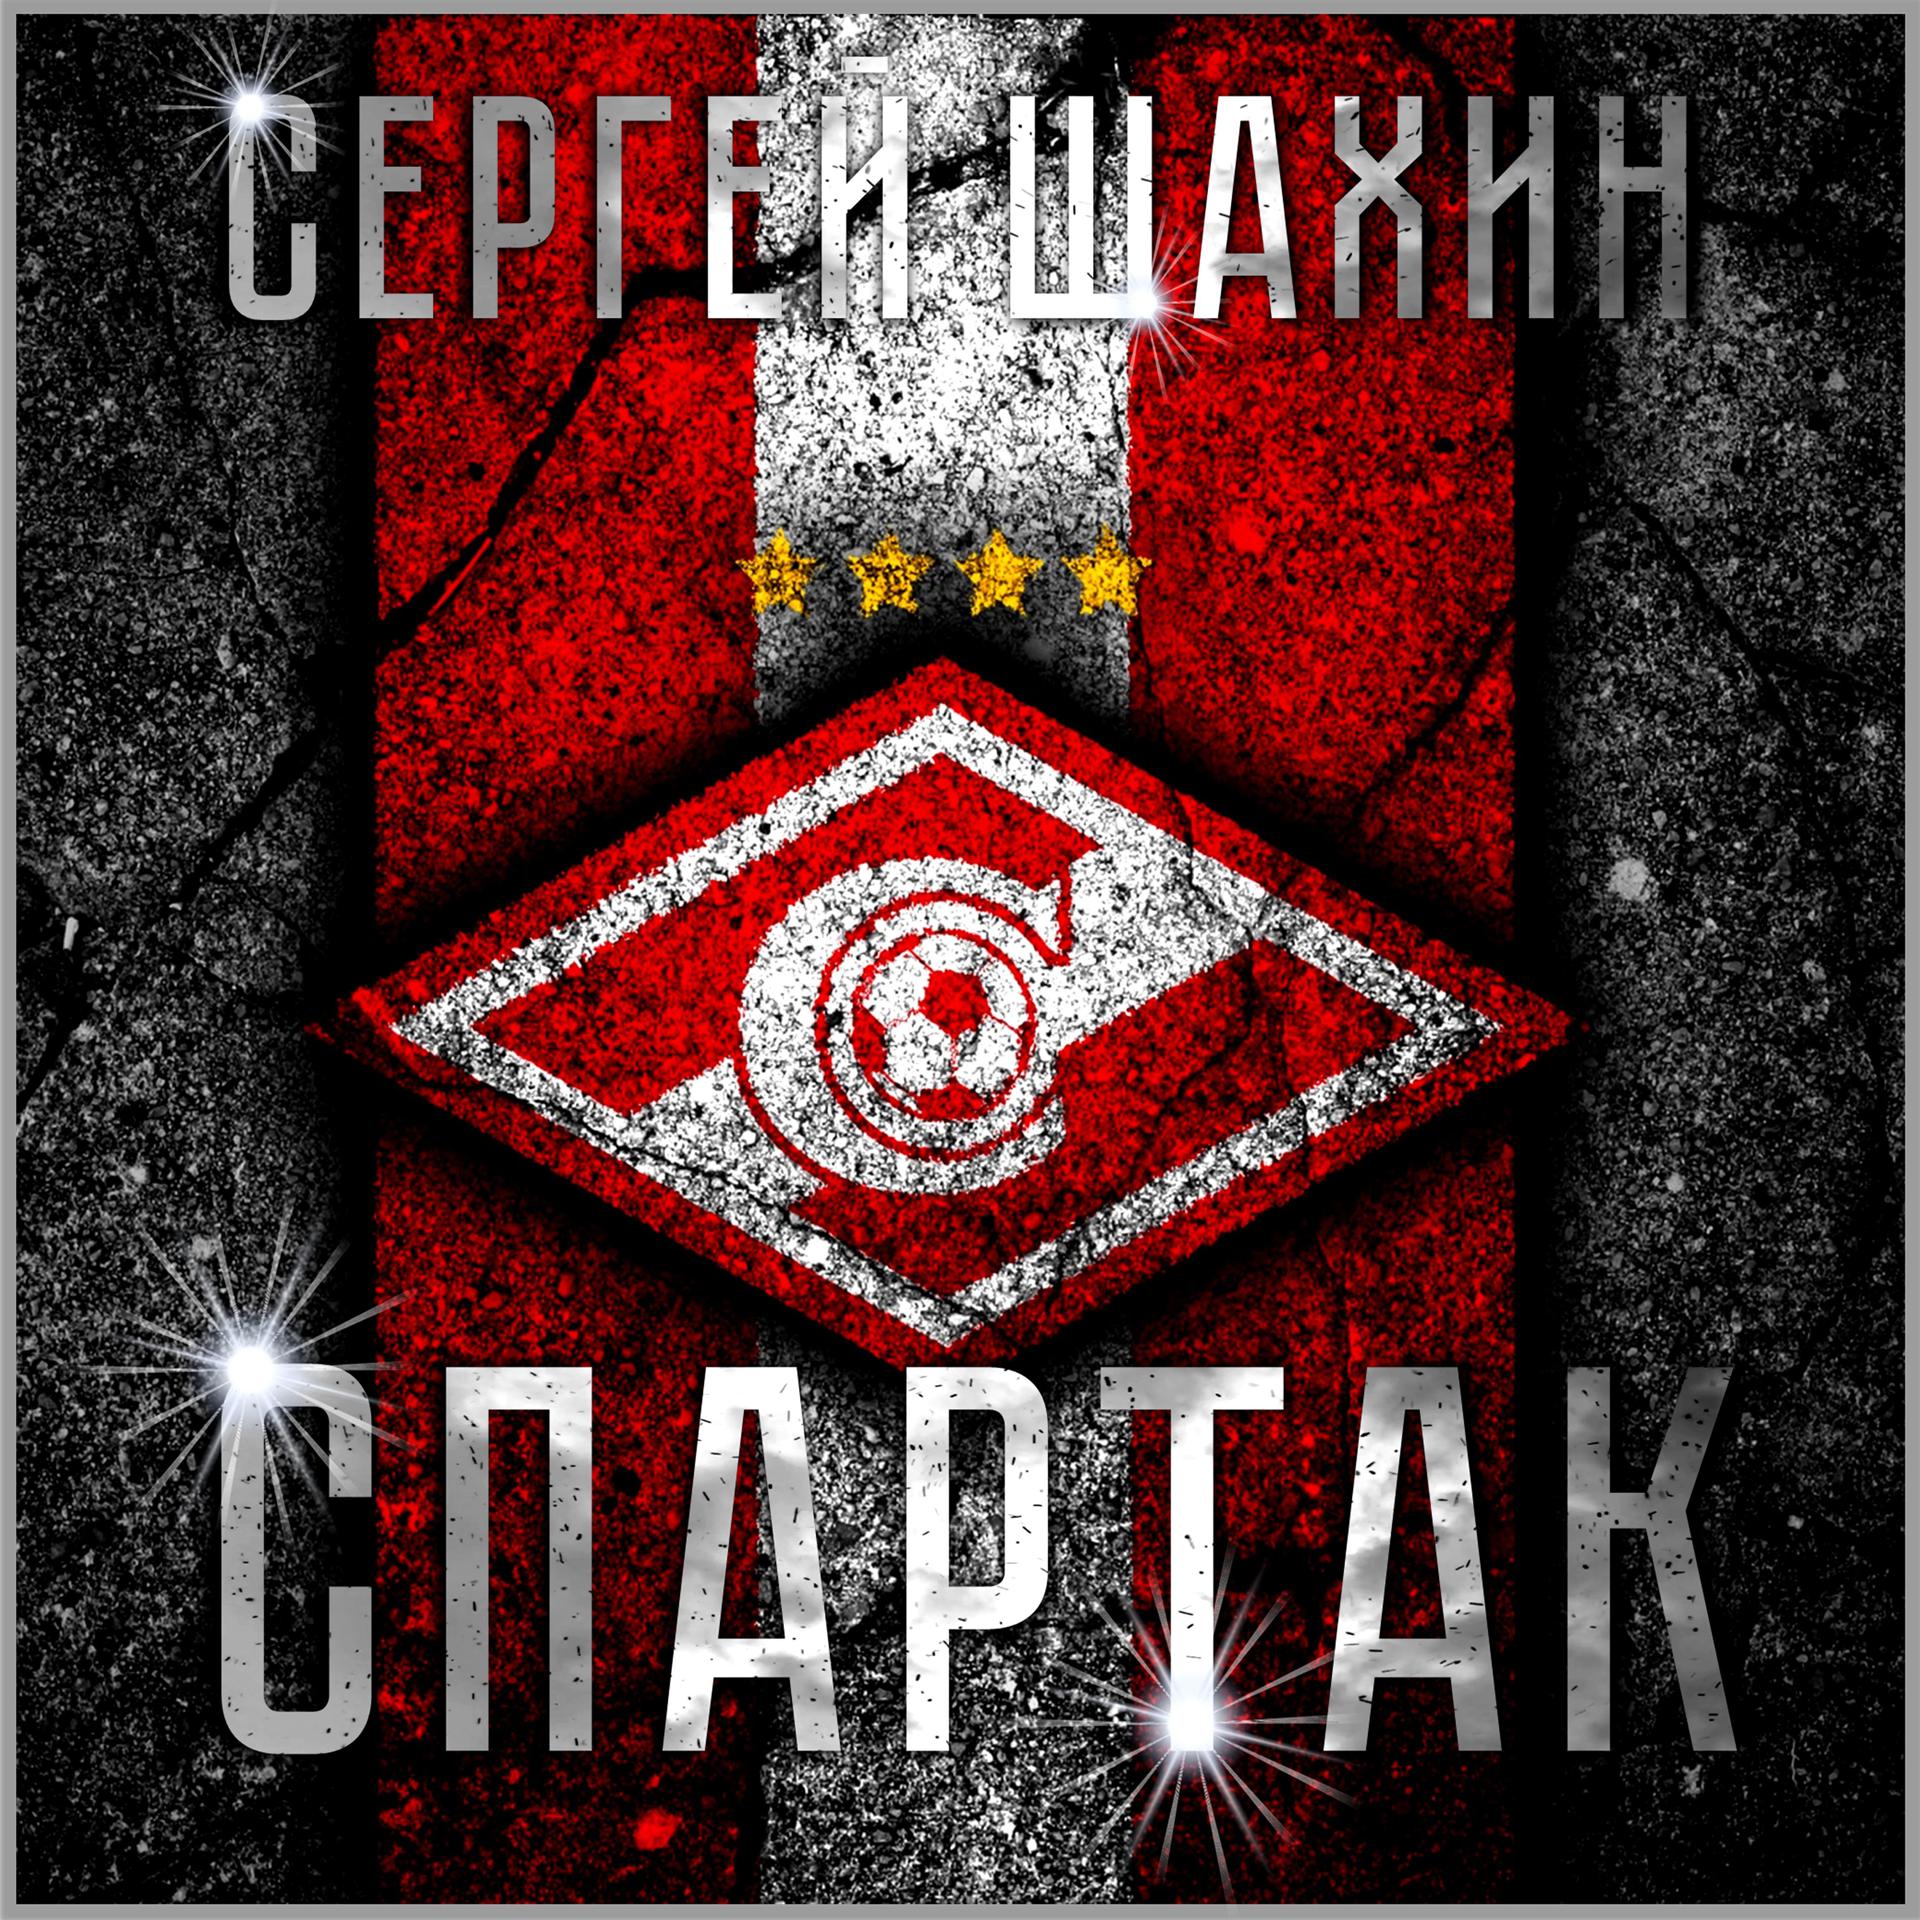 Постер альбома Спартак